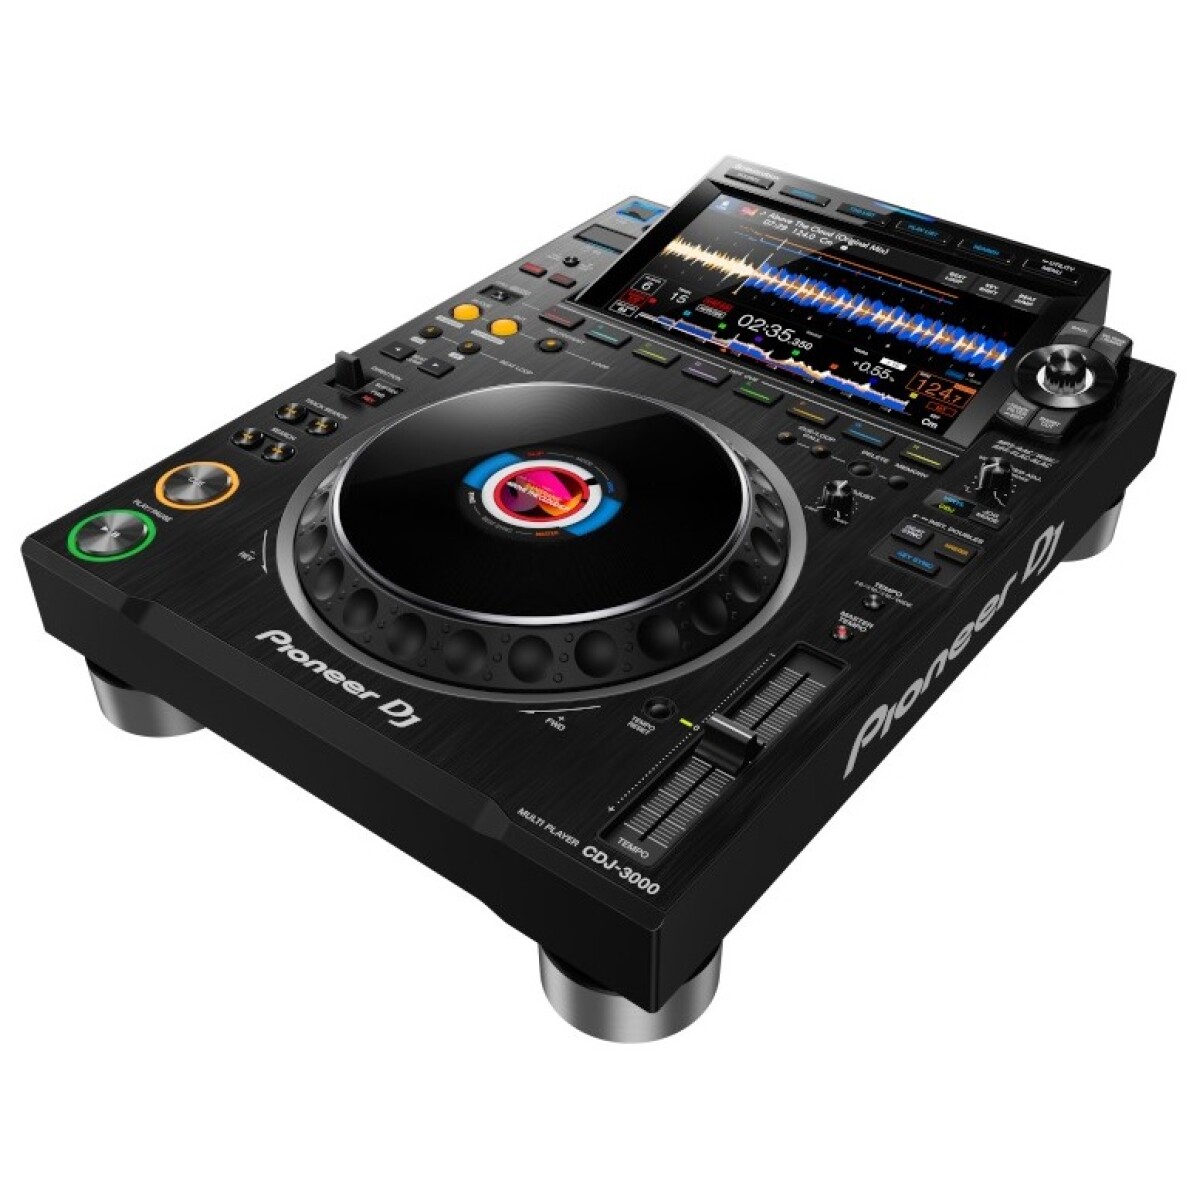 REPRODUCTOR DJ PIONEER DJ CDJ3000 